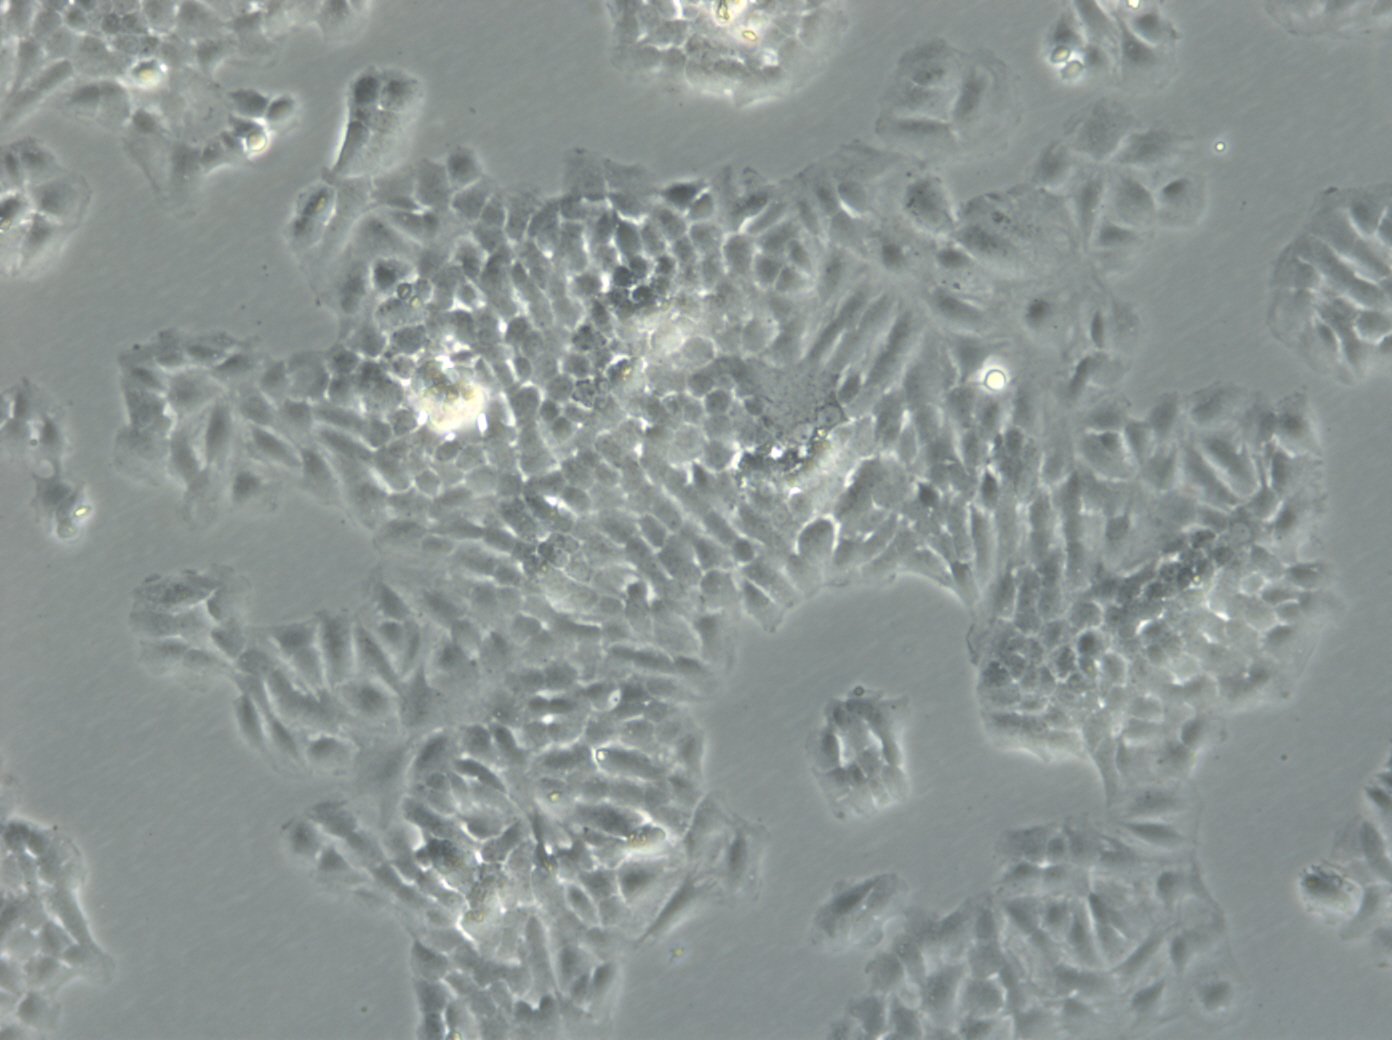 FRTL-5 Cells